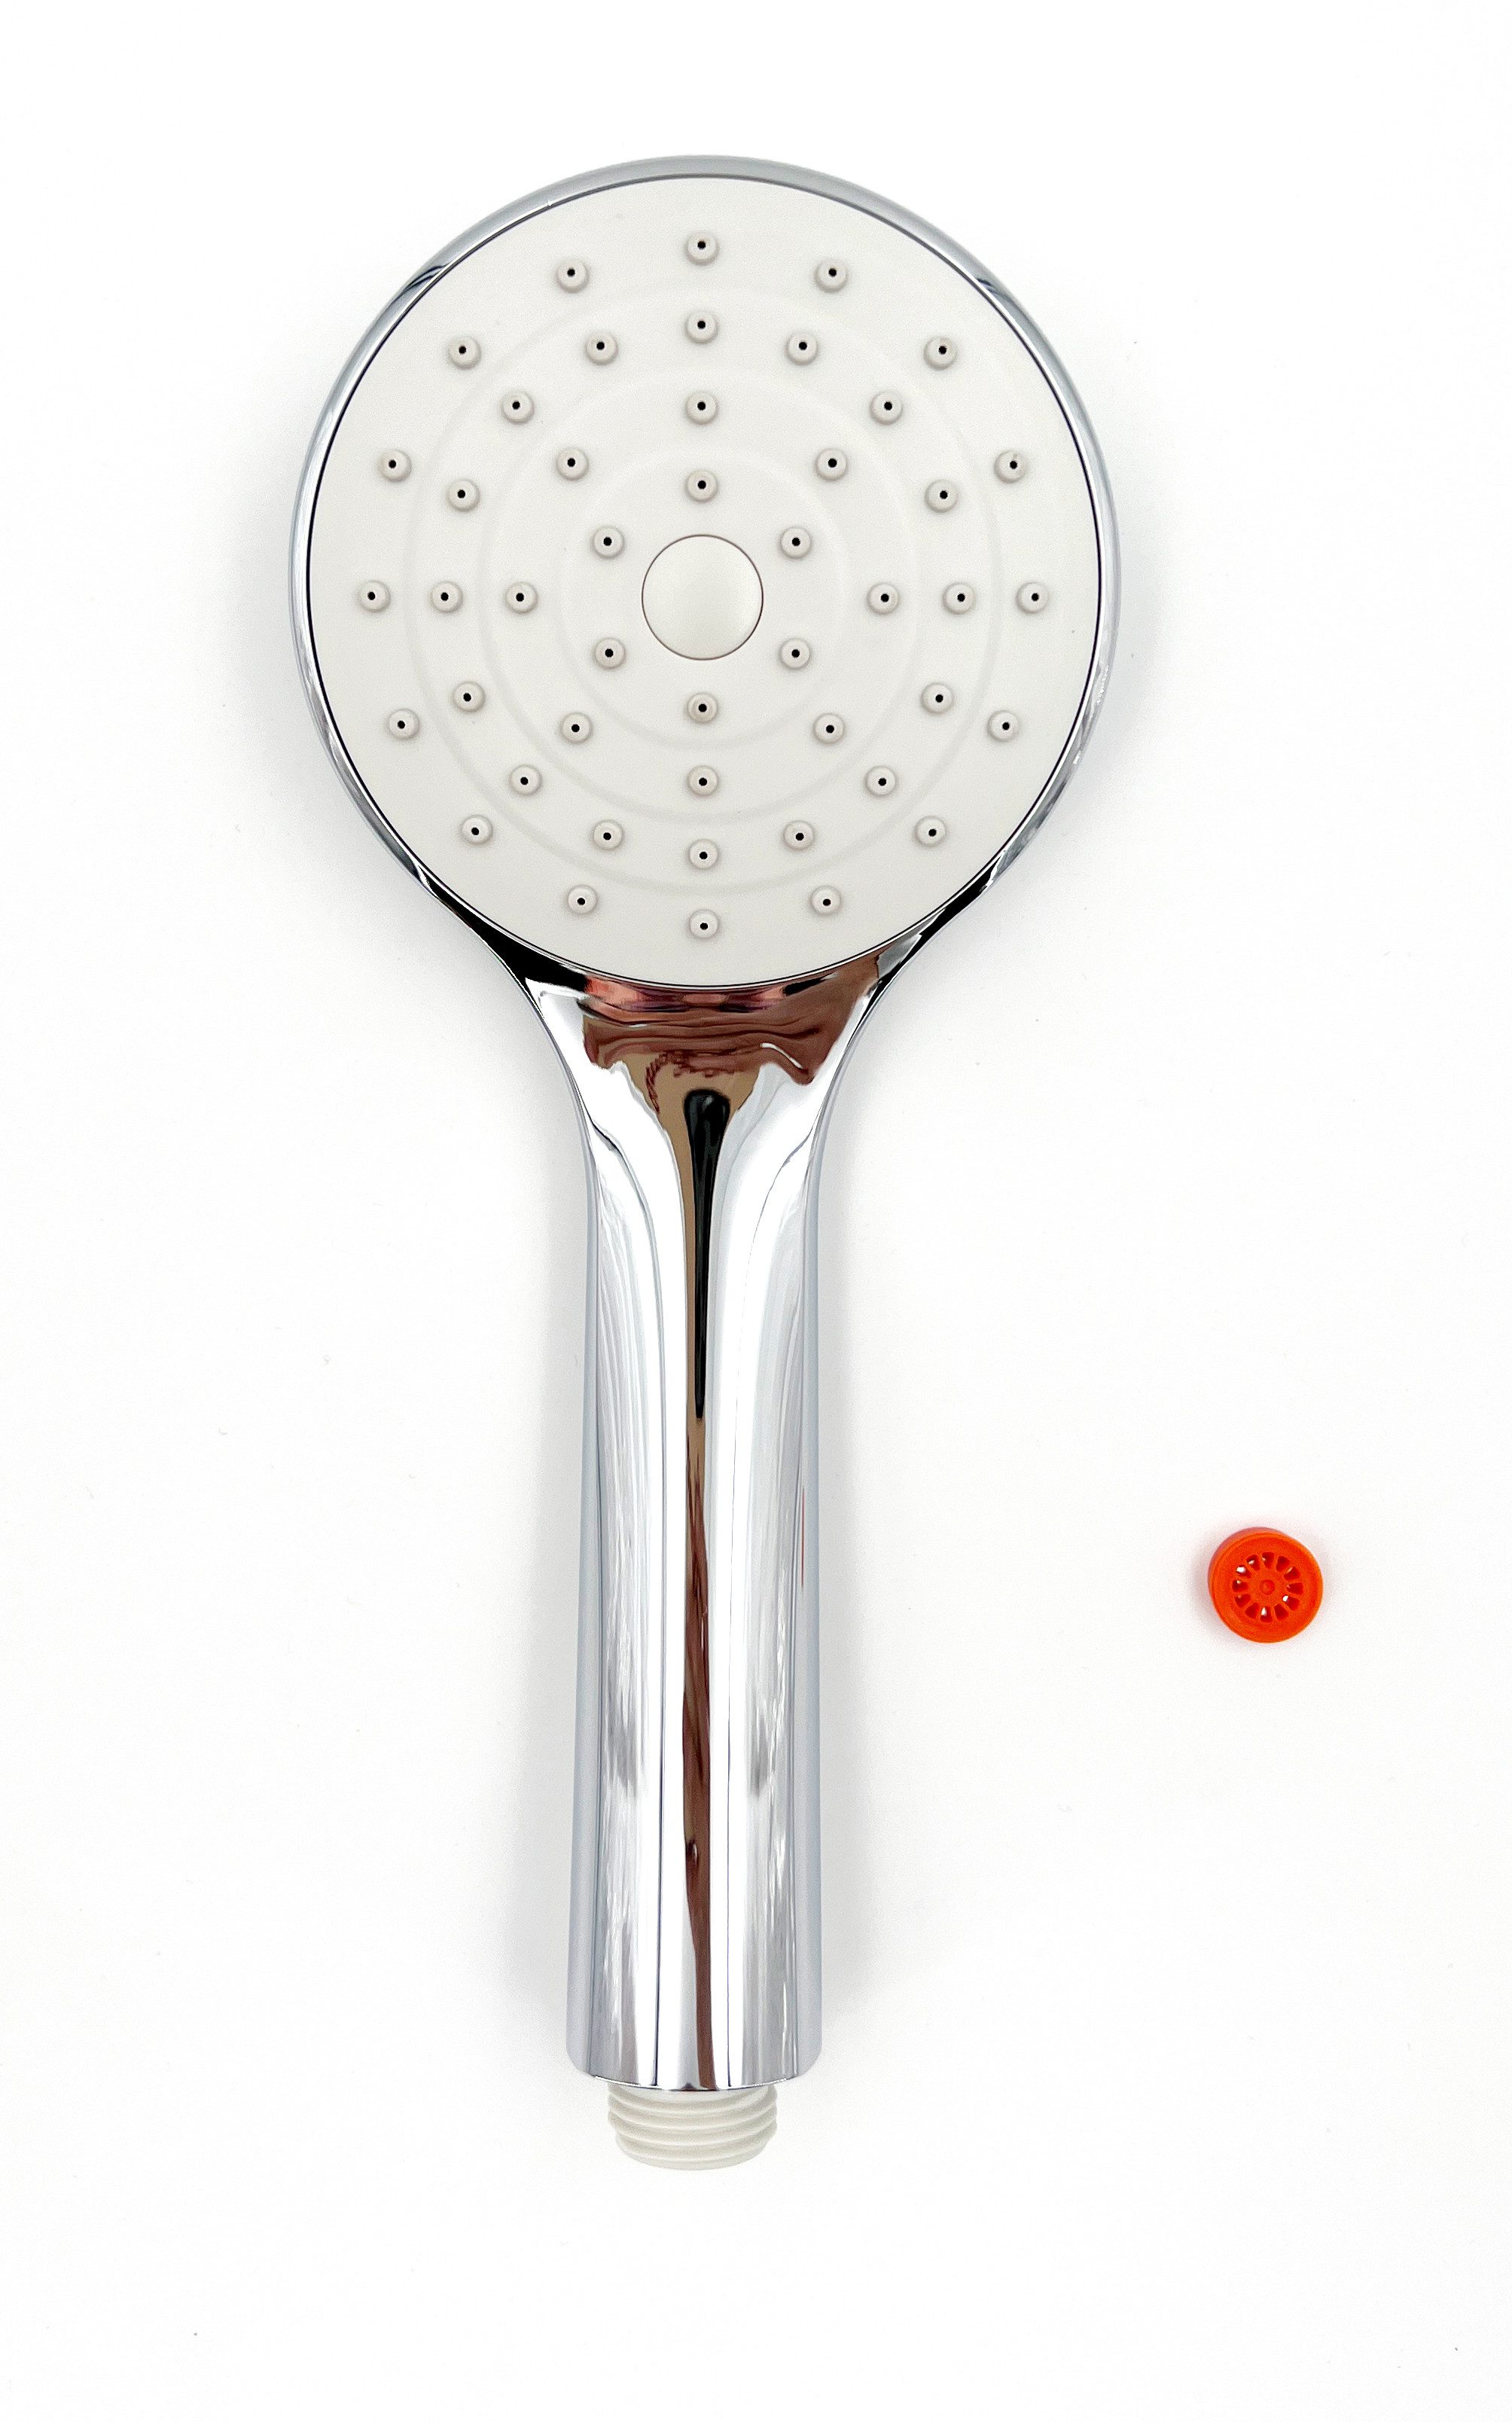 ADOB Handbrause Star, Ø 100 mm, 1 oder 3 Strahlarten inkl. Wasserspareinsatz, Antikalknoppen